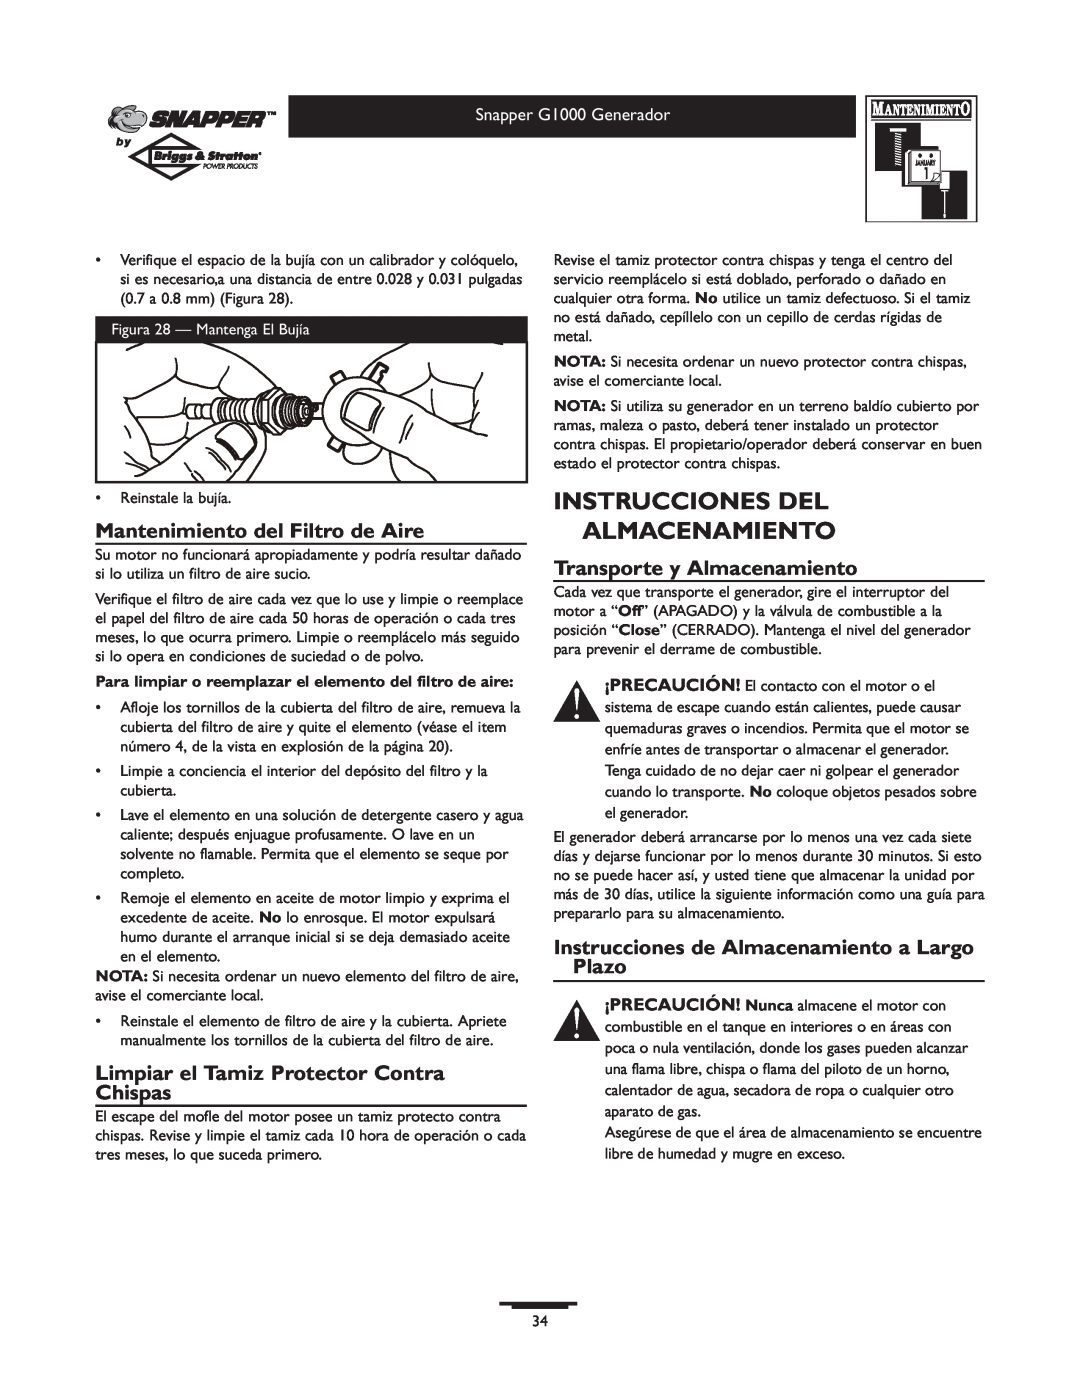 Snapper 1666-0 owner manual Instrucciones Del Almacenamiento, Mantenimiento del Filtro de Aire, Transporte y Almacenamiento 